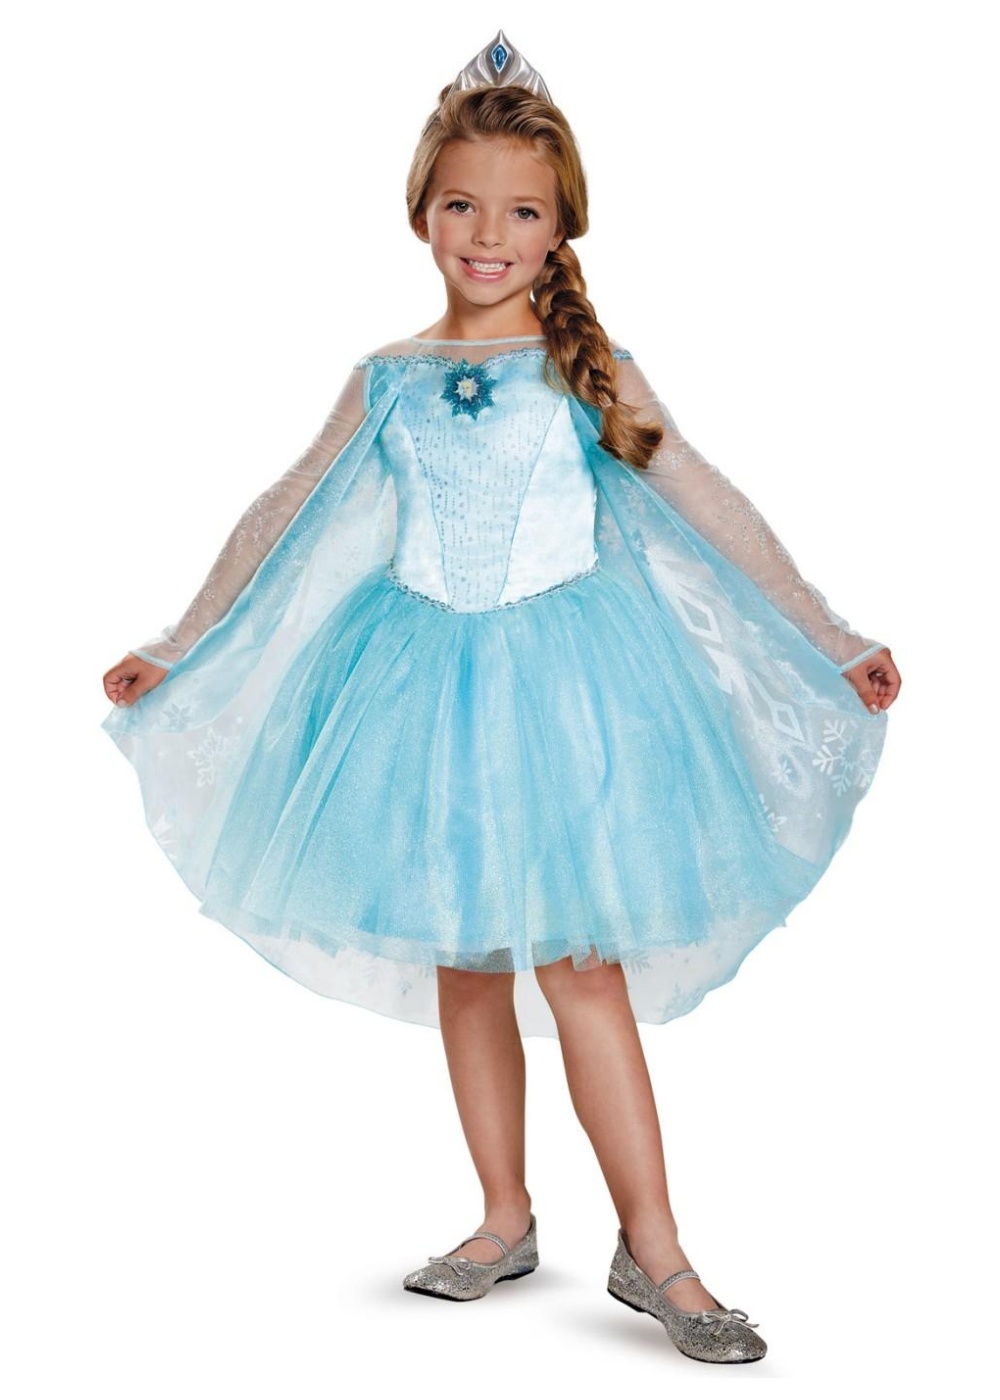  Girls Frozen Elsa Tutu Costume